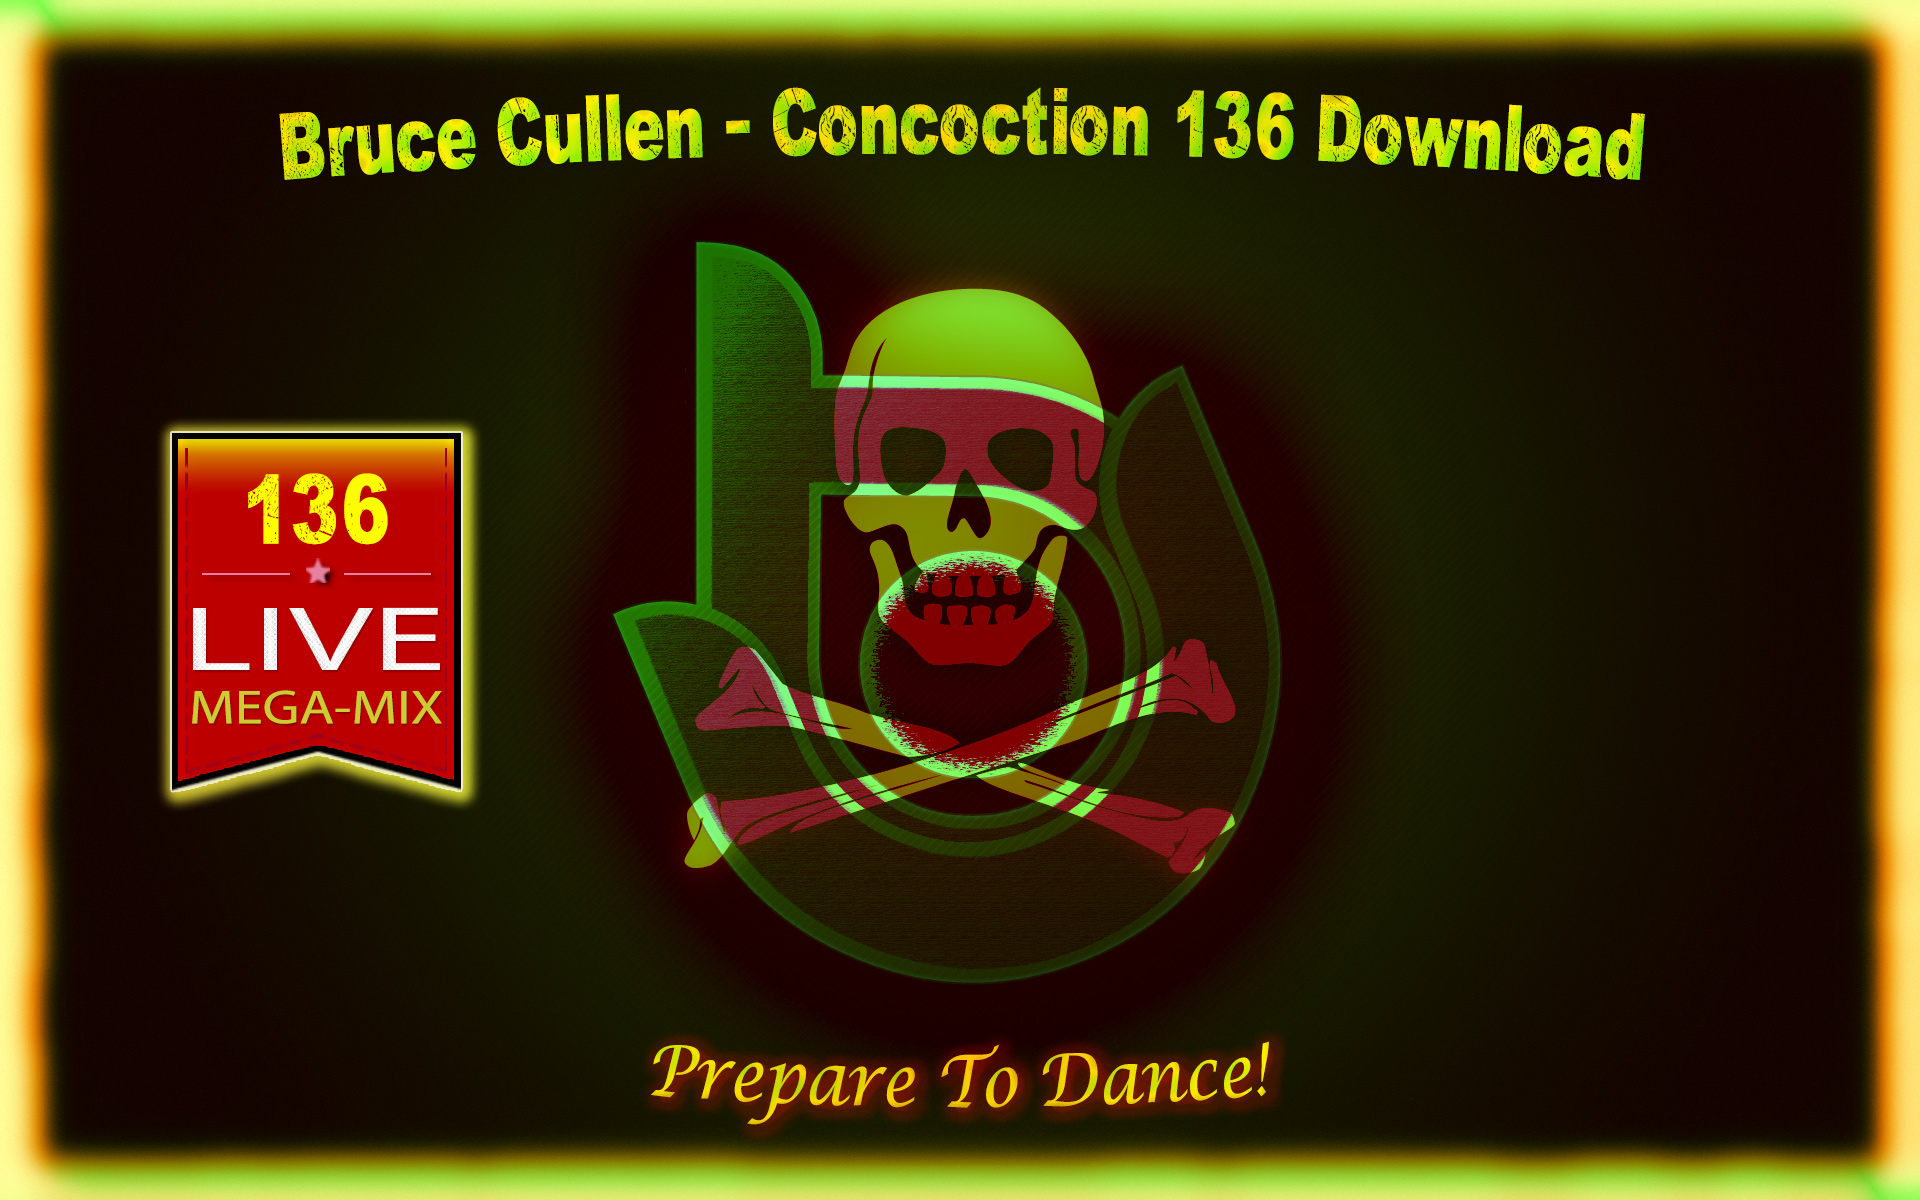 Bruce Cullen's Concoction 136.